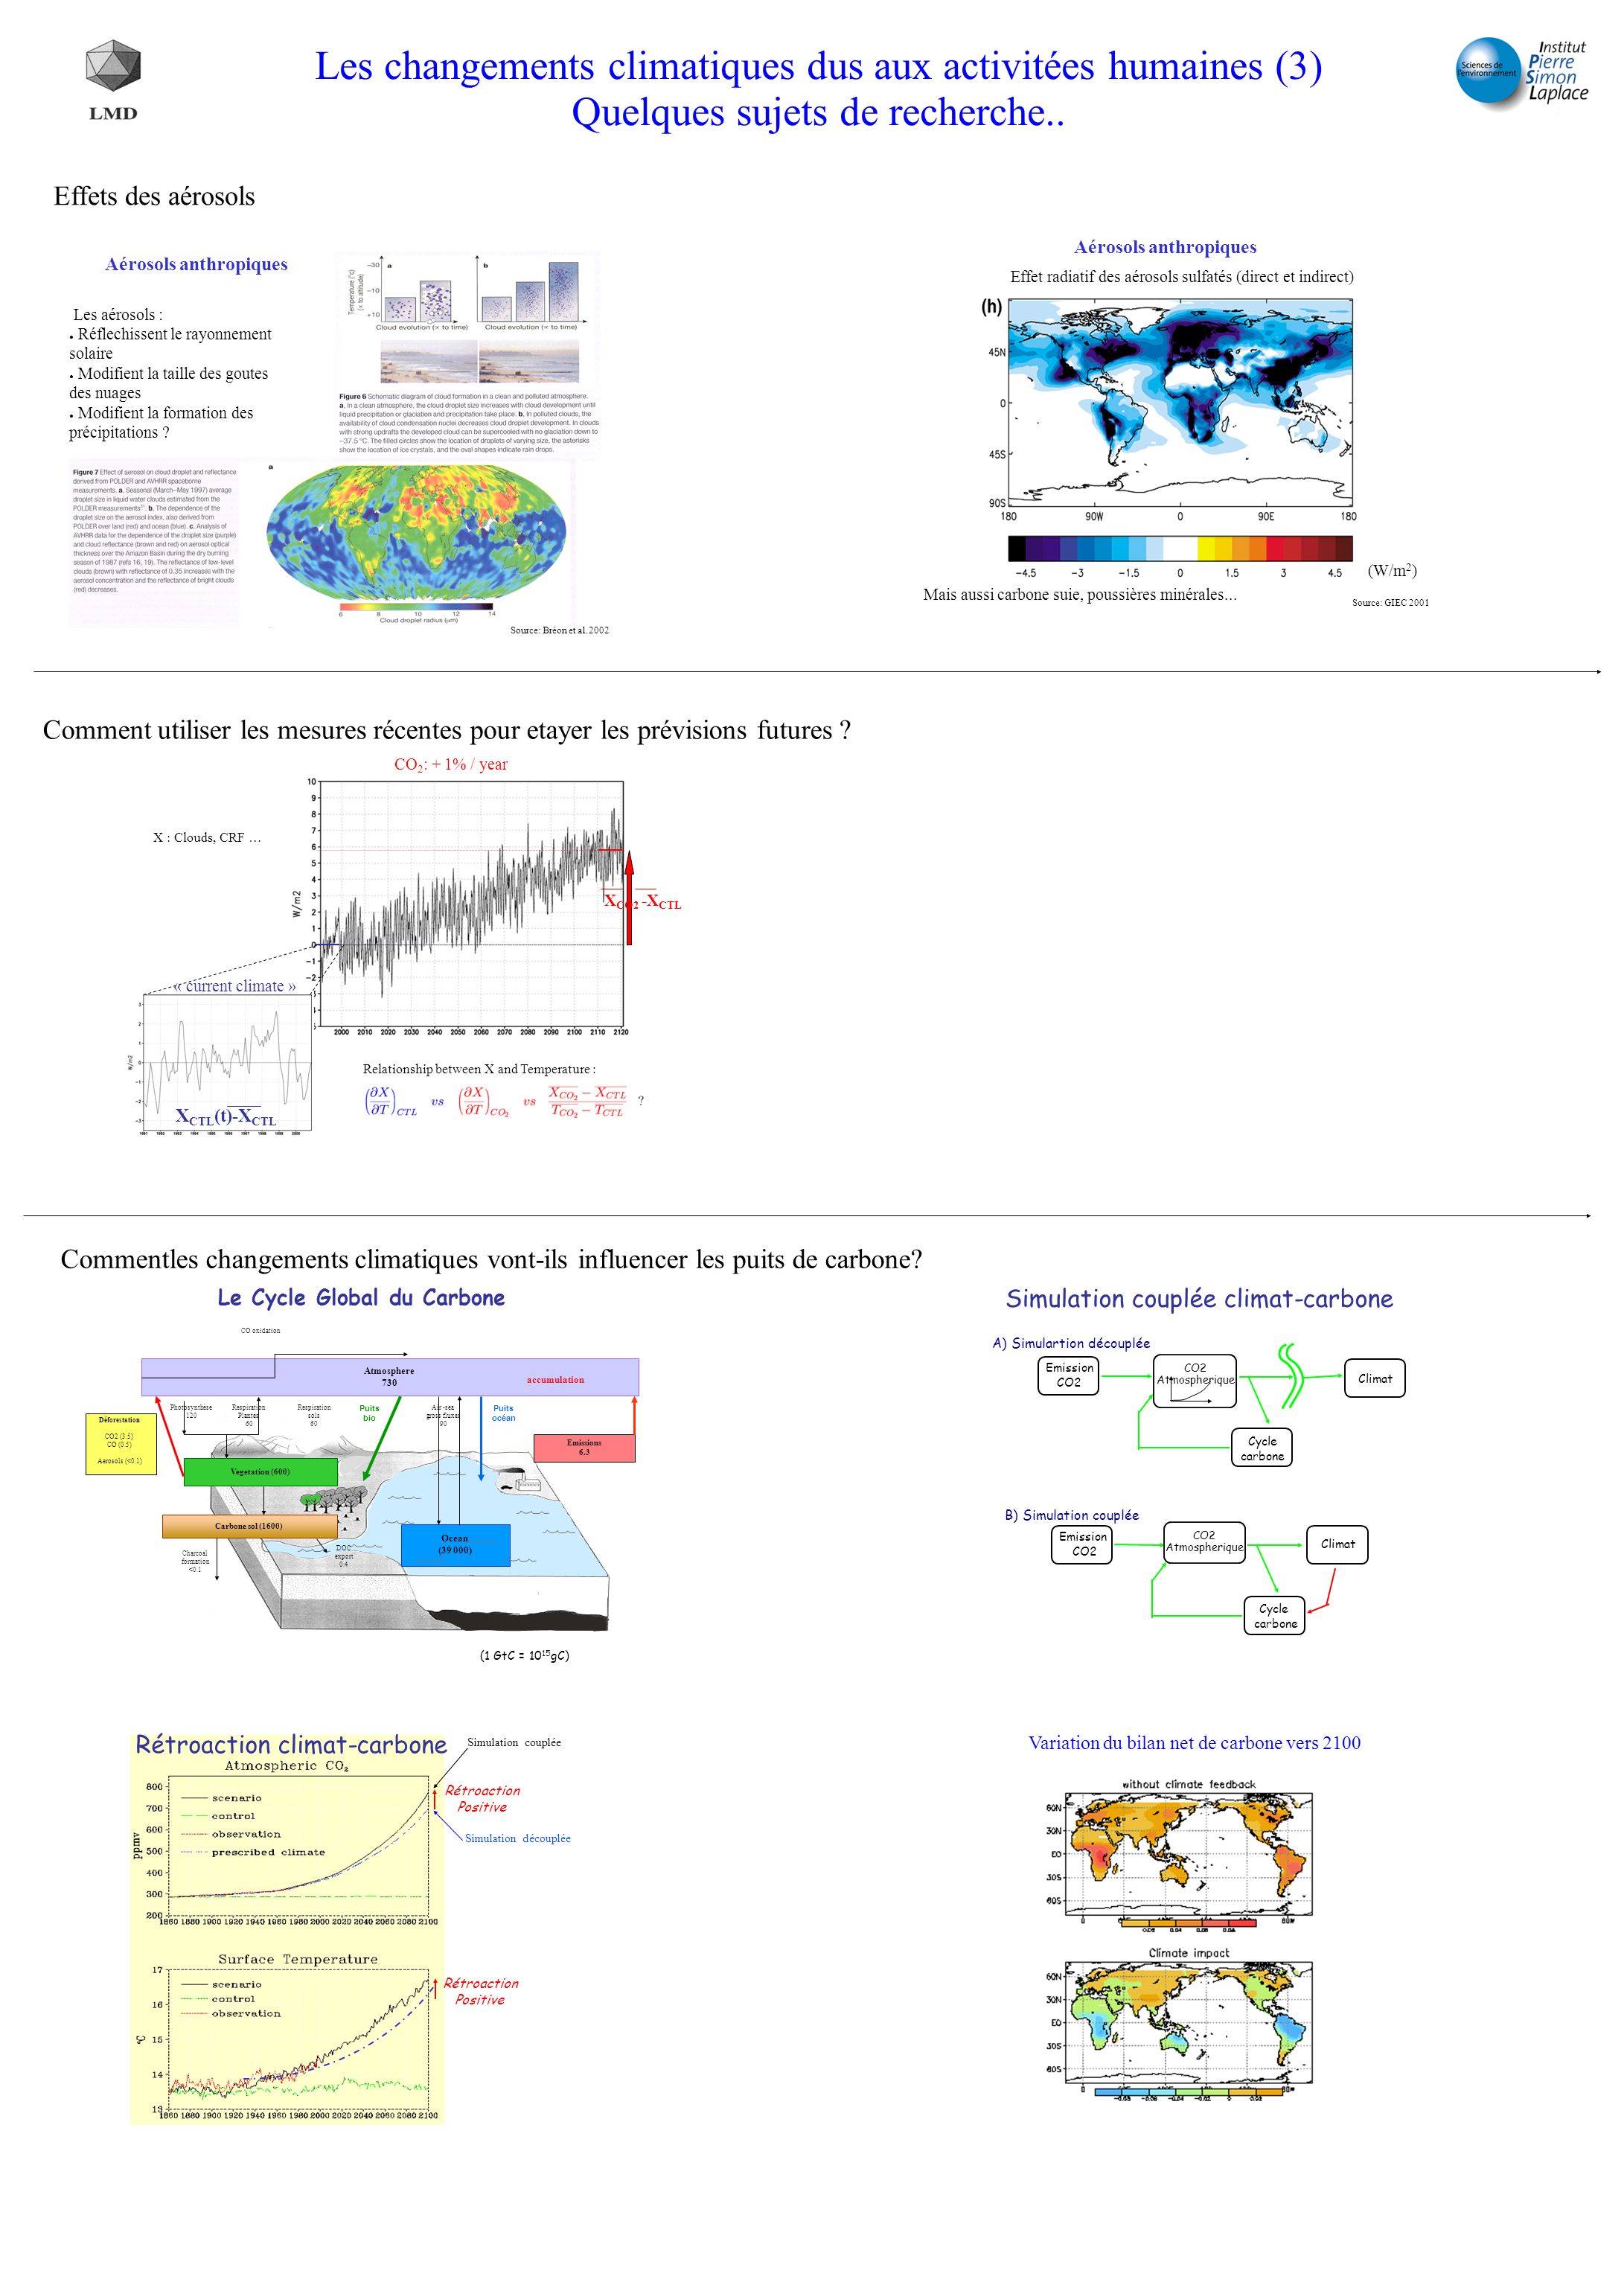 Les changements climatiques dus aux activitées humaines (3) Quelques sujets de recherche..